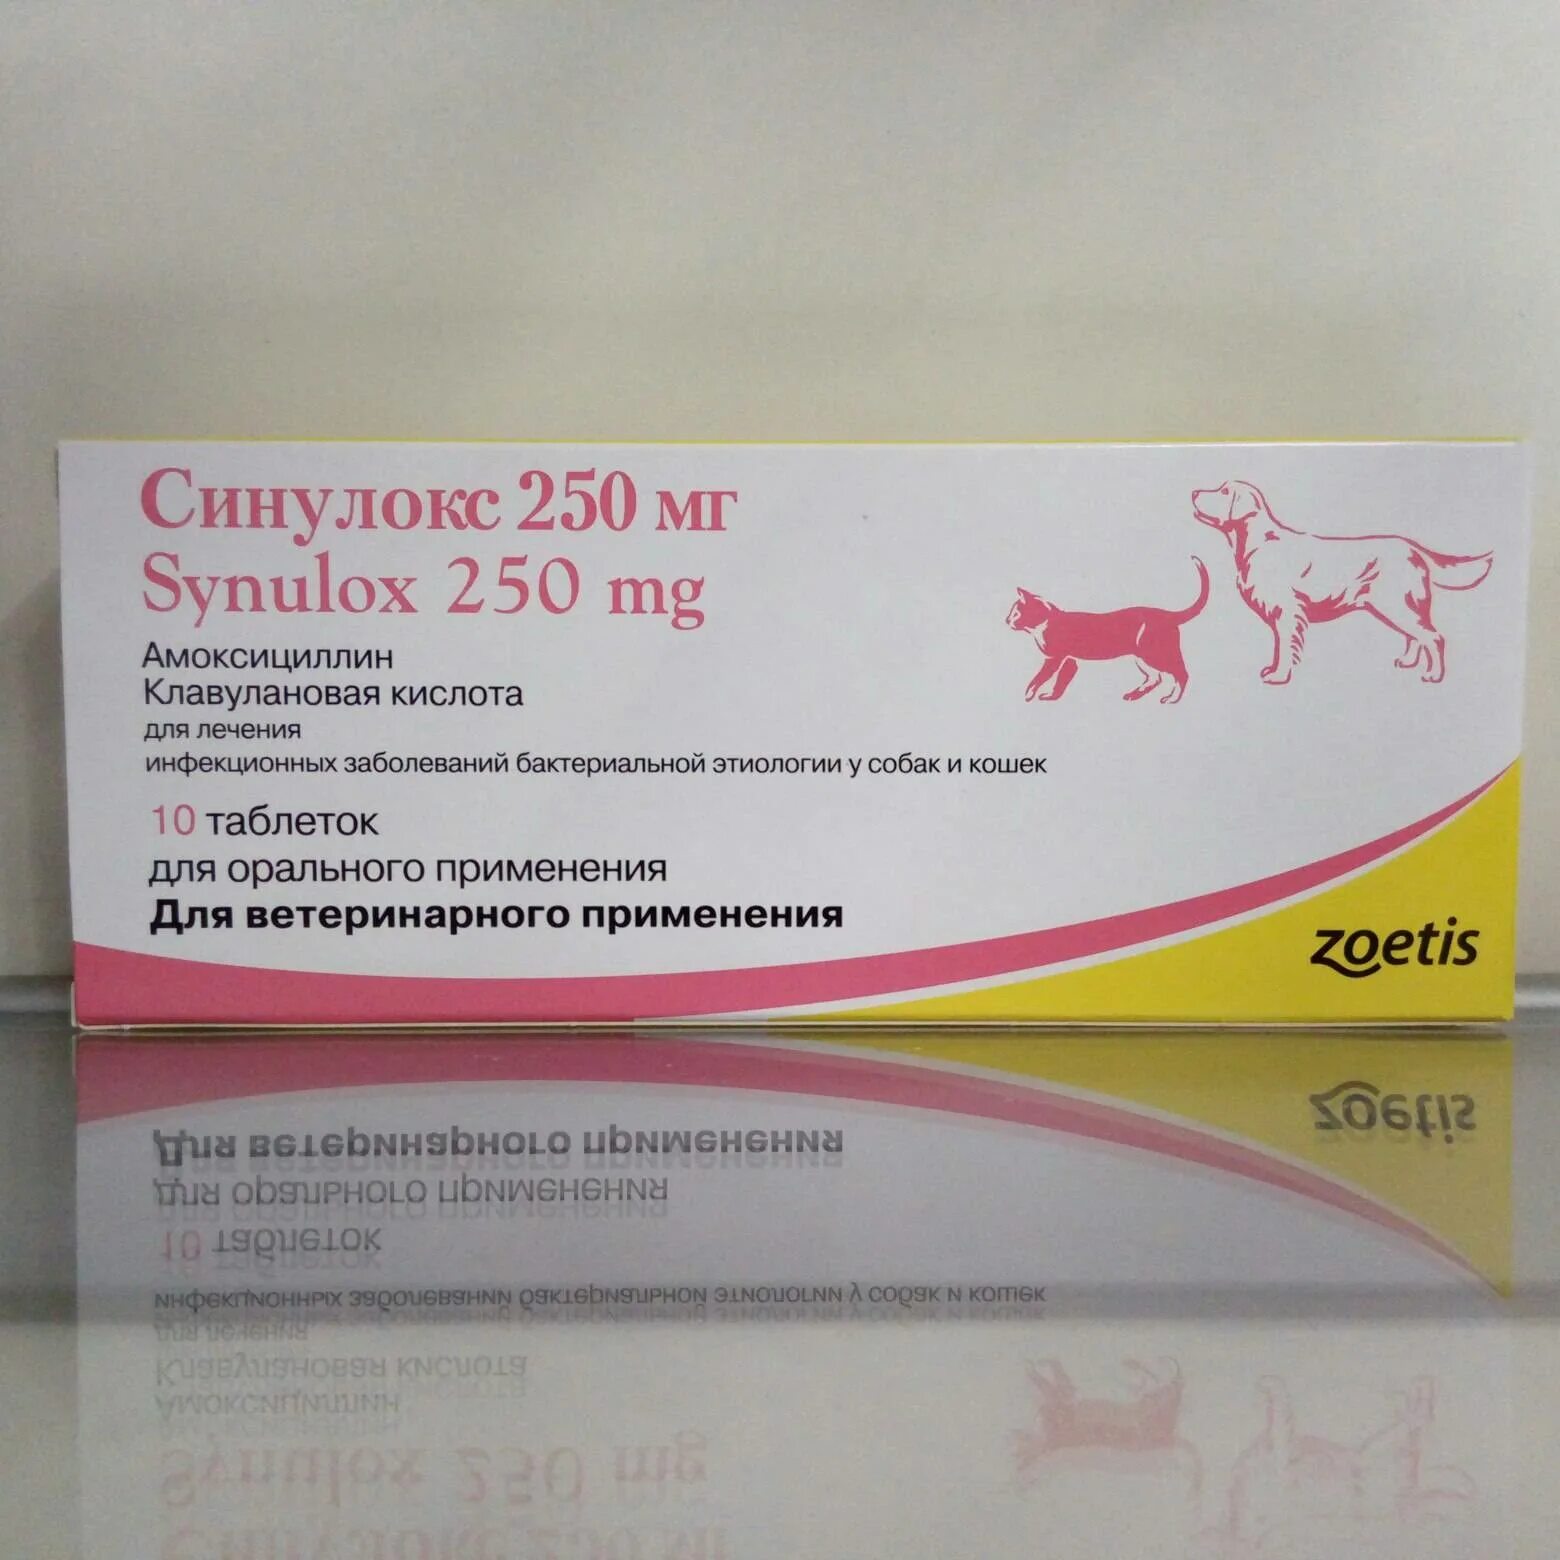 Синулокс 150 мг. Антибиотик для животных синулокс таблетки 50мг. Zoetis синулокс 50 мг.